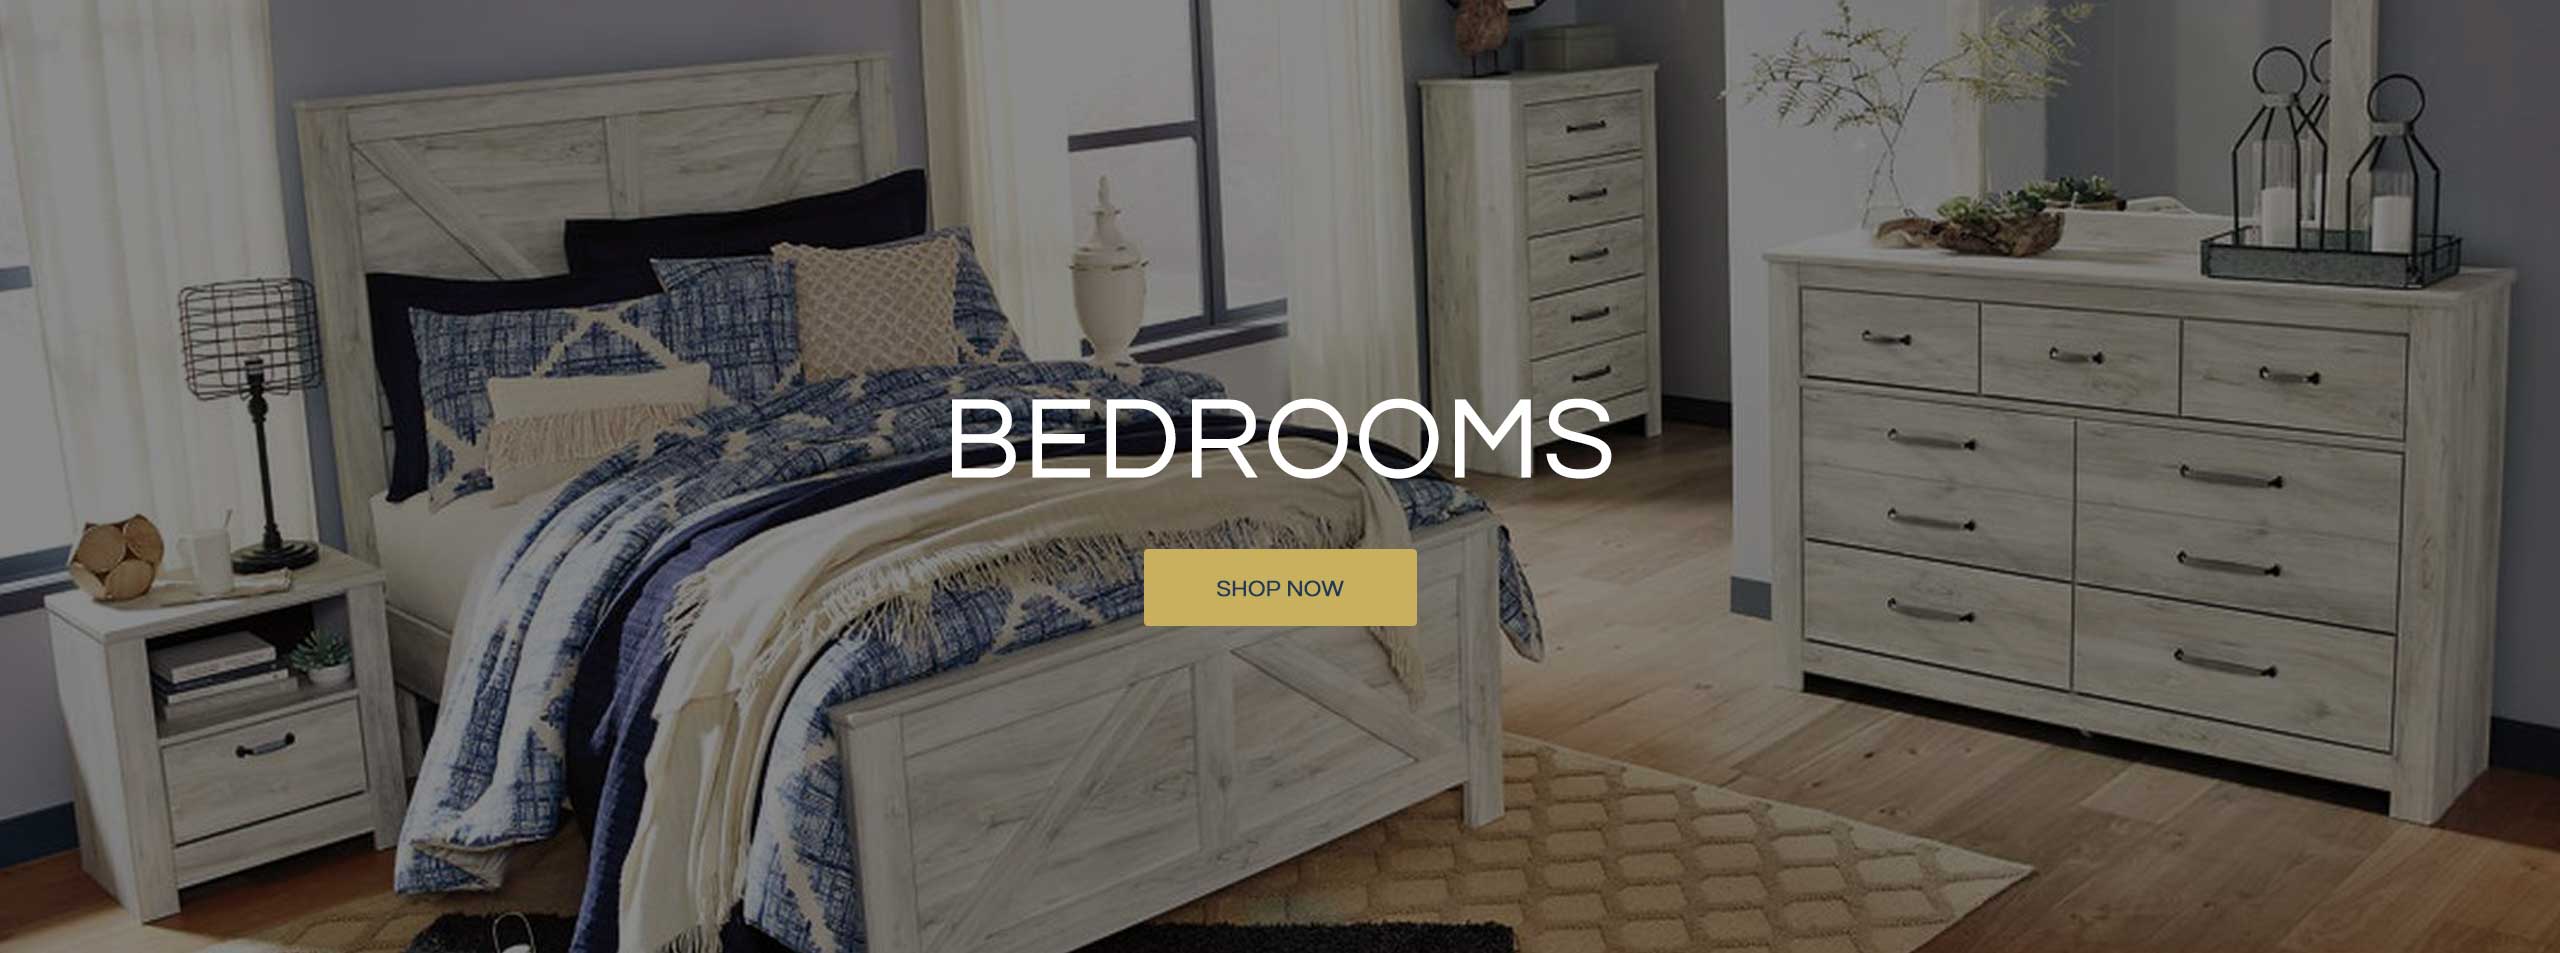 Bedrooms - Shop Now